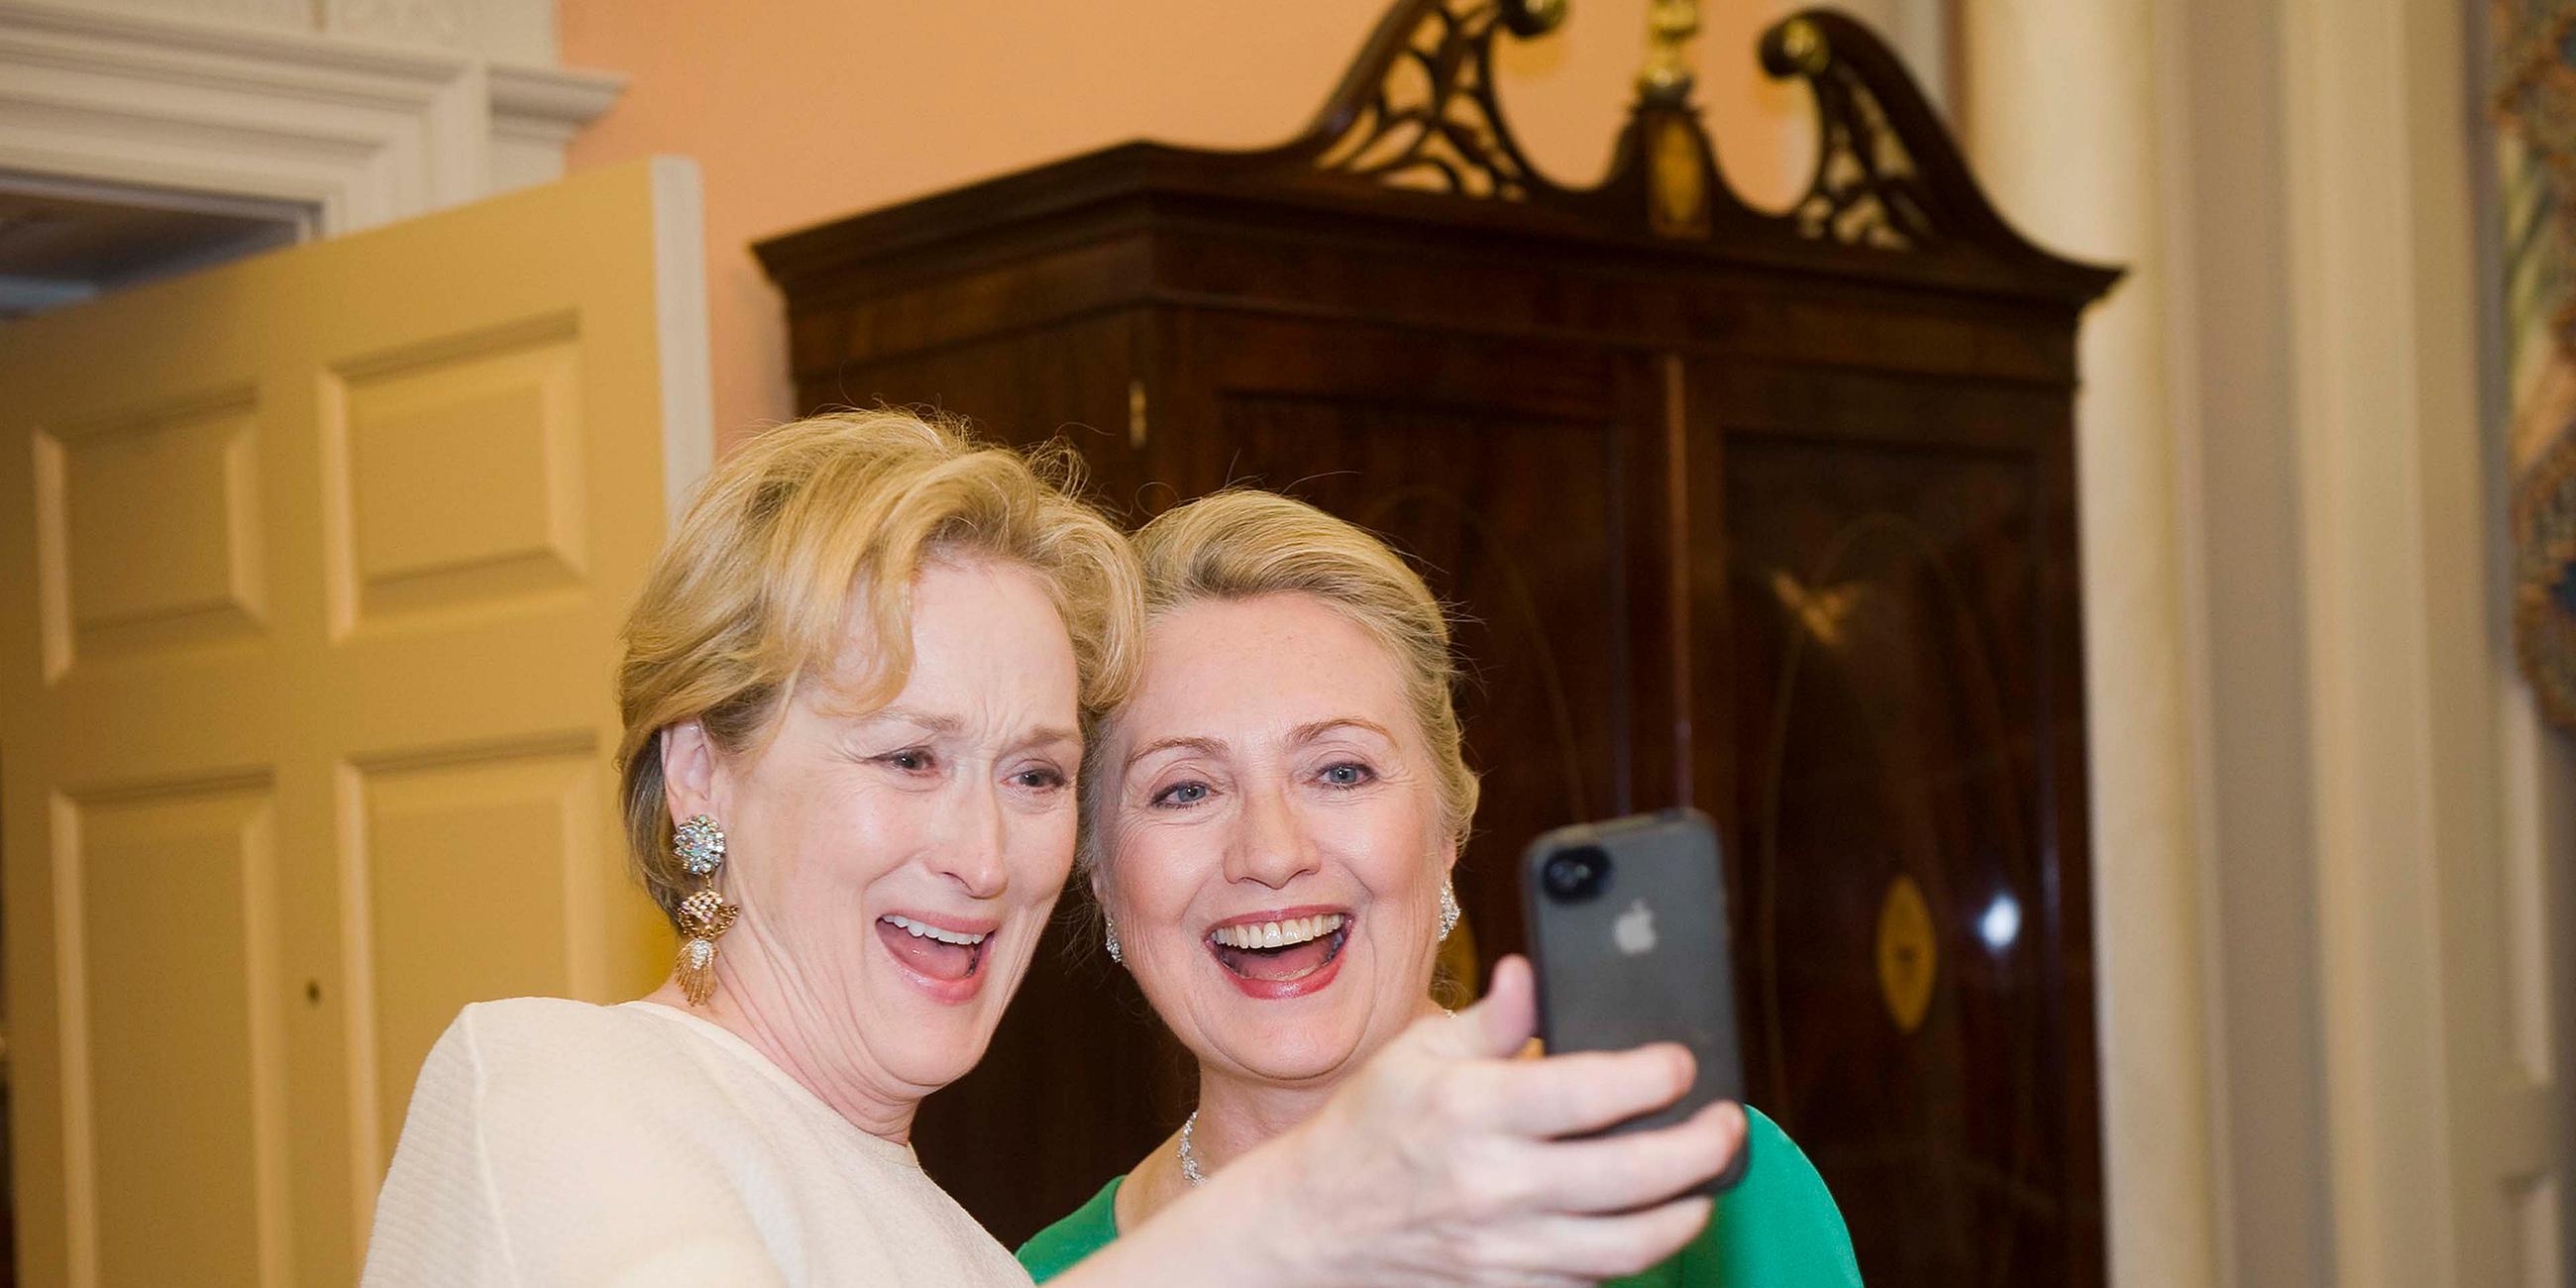 Archiv. Meryl Streep schießt ein Selfie von sich und Hillary Clinton - 2012